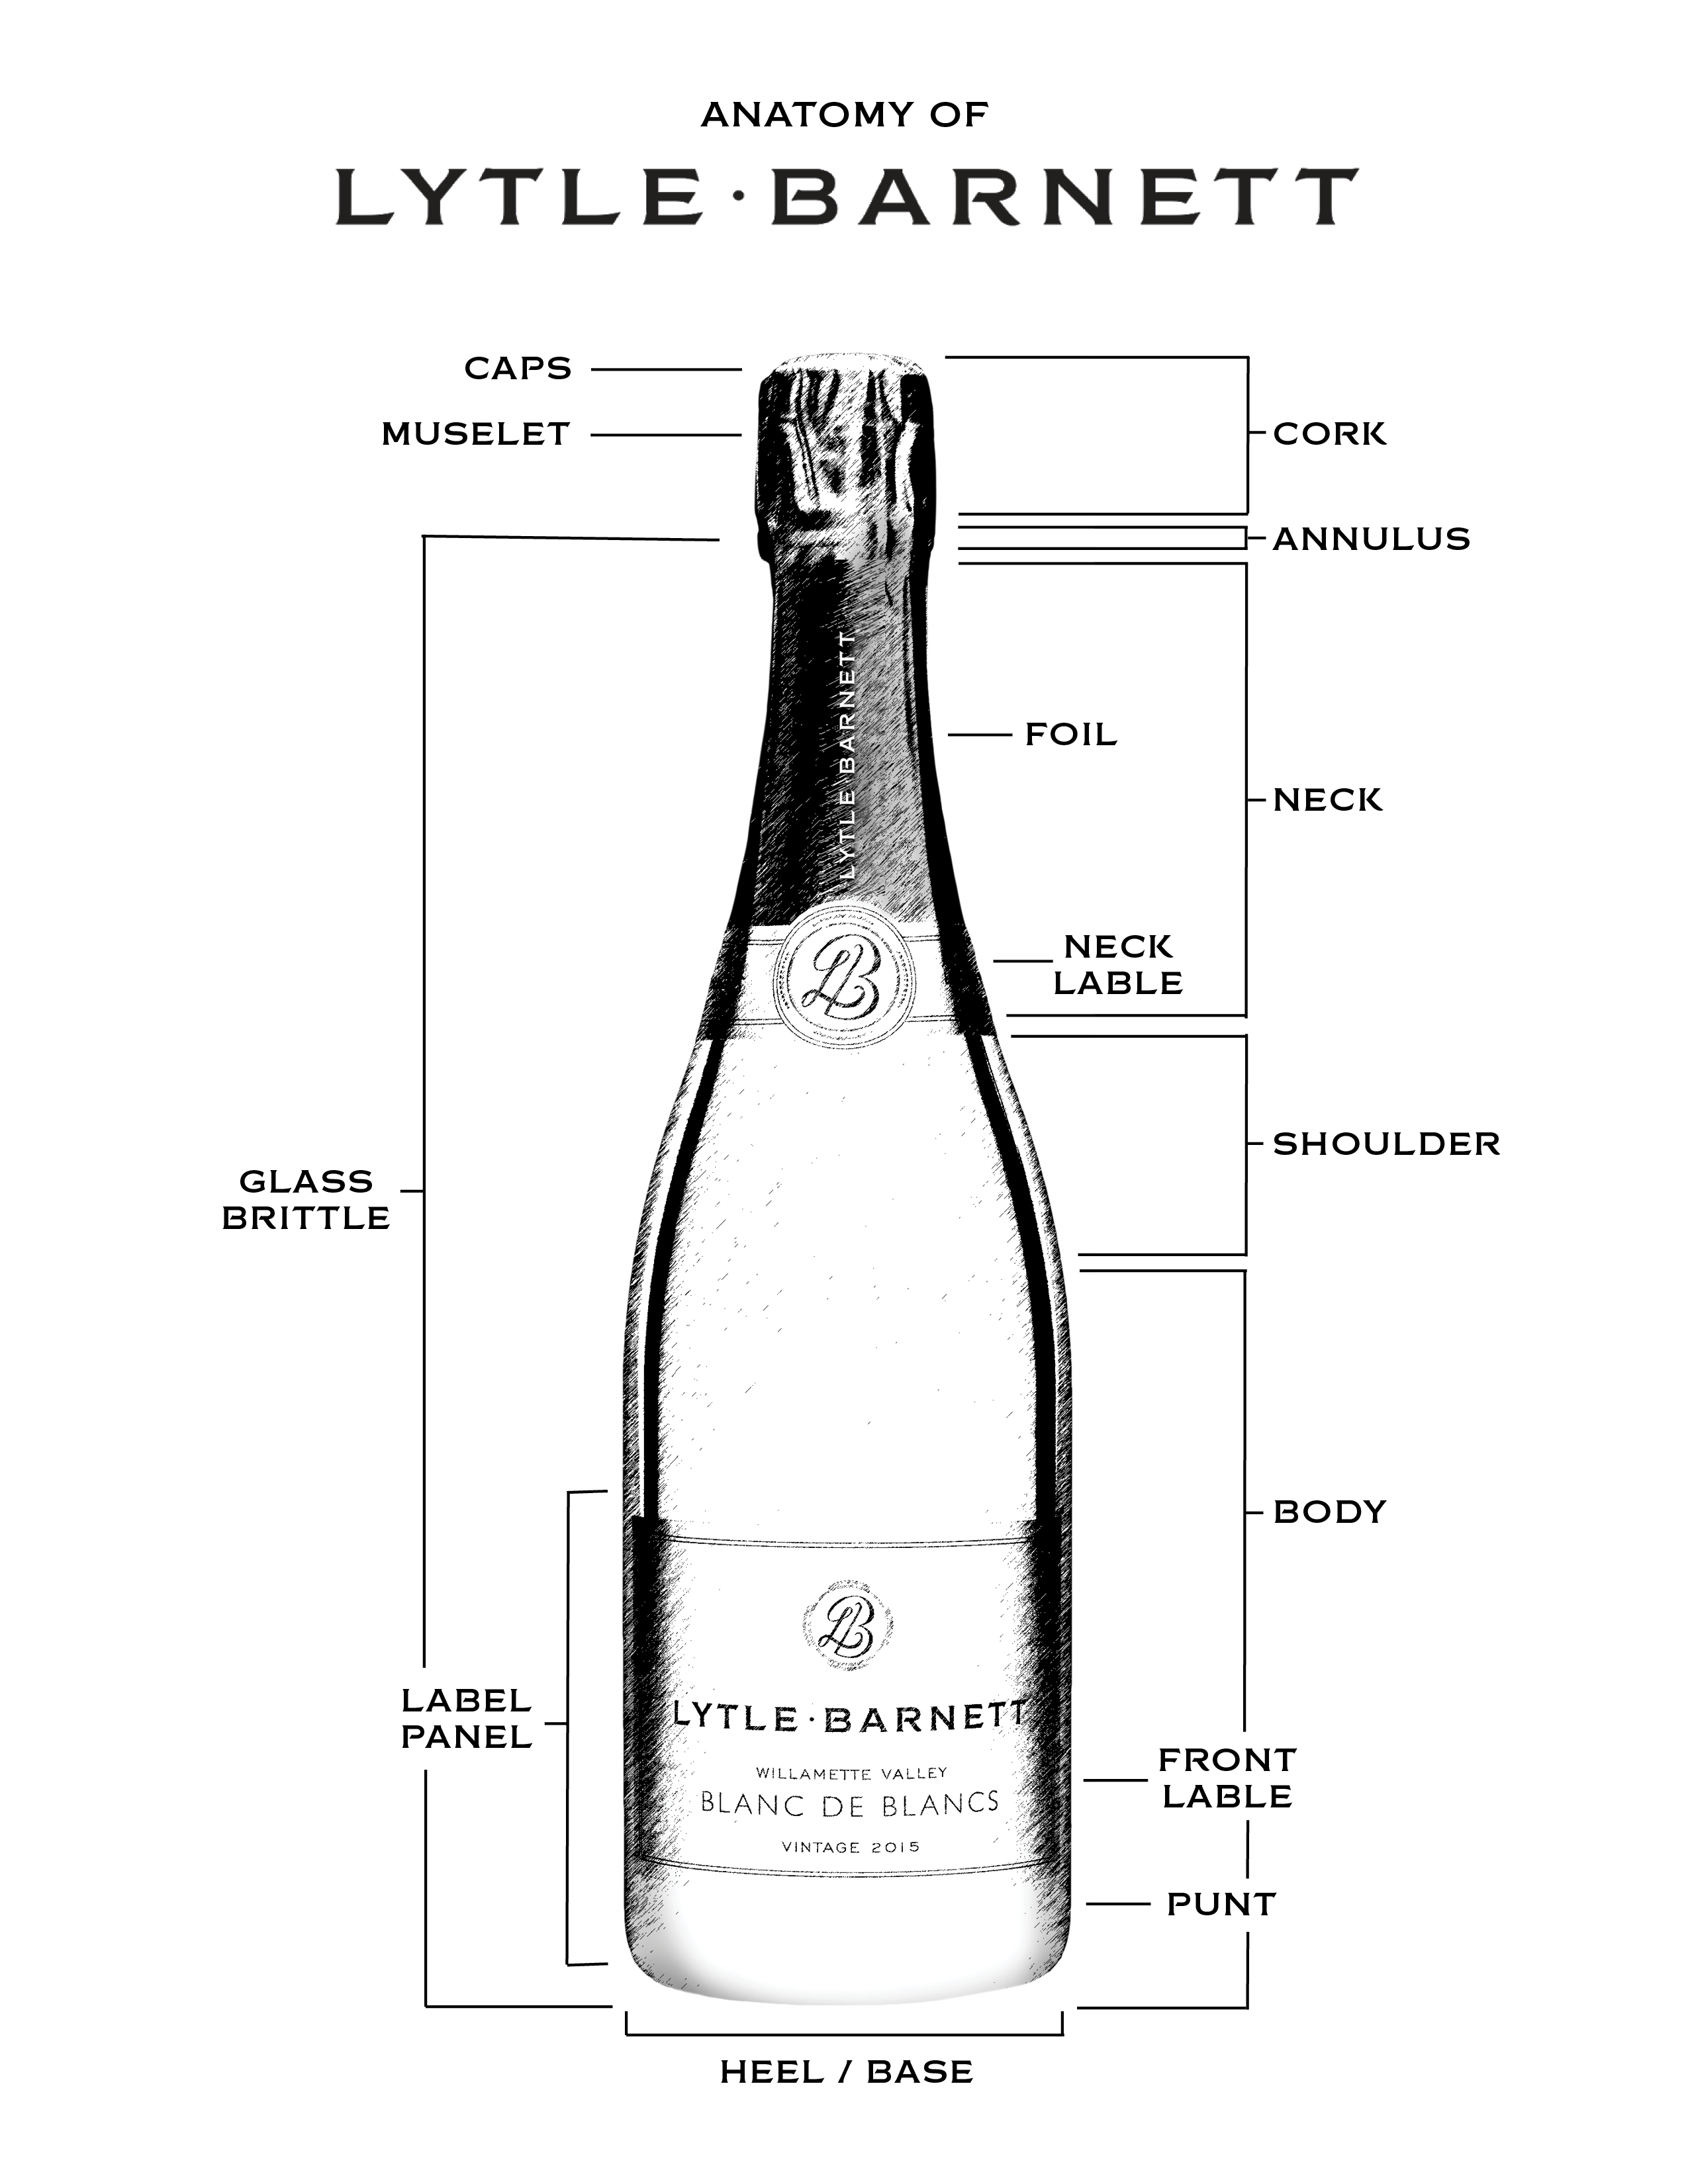 https://lytle-barnett.com/channels/website/images/Lytle-Barnett-Bottle-Anatomy.jpg